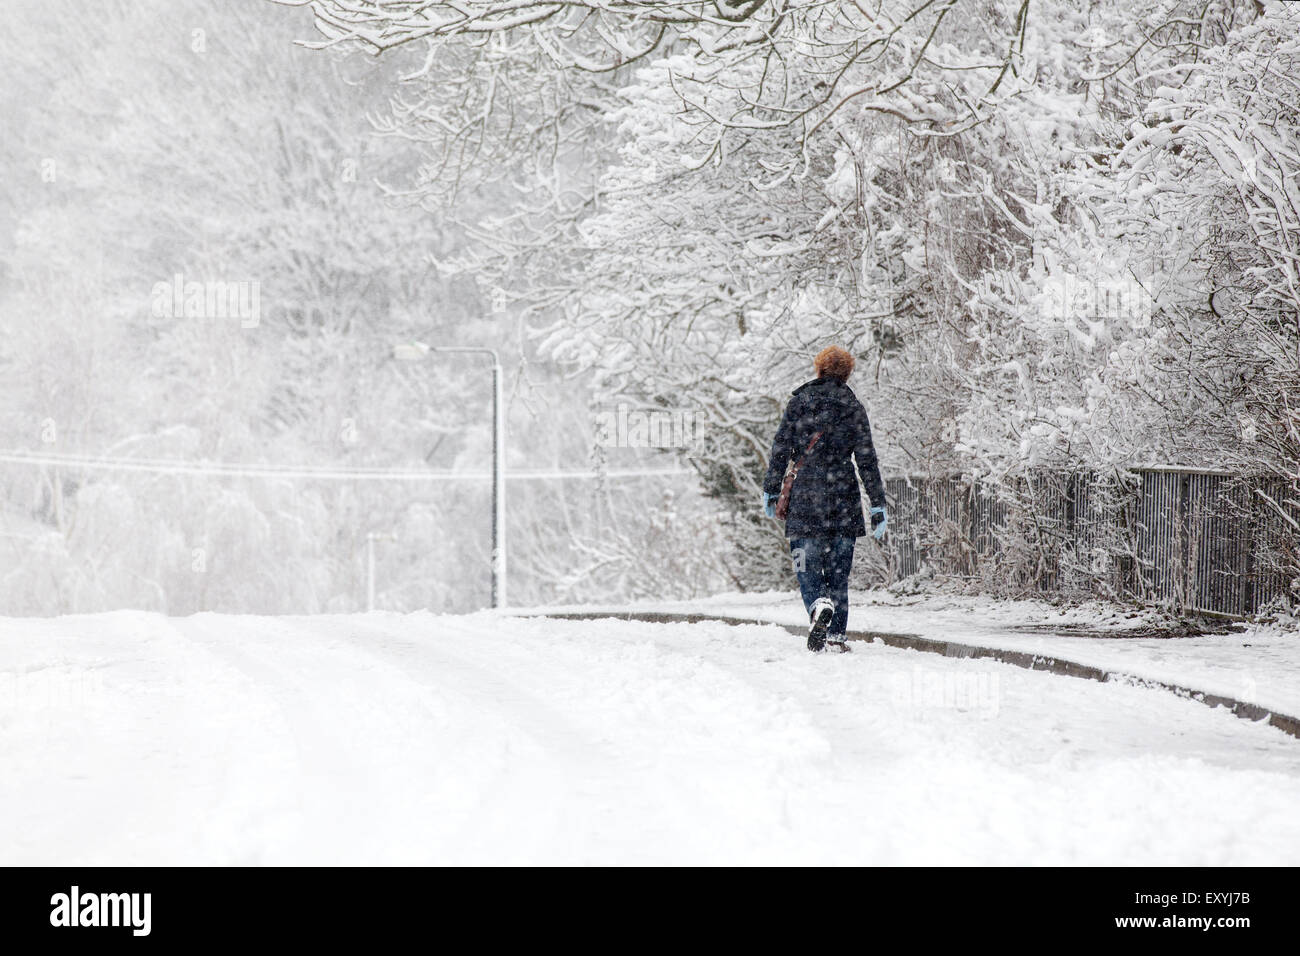 Une femme marchant le long d'une route de banlieue couvert de neige dans une tempête de neige. En utilisant la voie de gagner de l'emprise que le sentier est gelé et glissant Banque D'Images